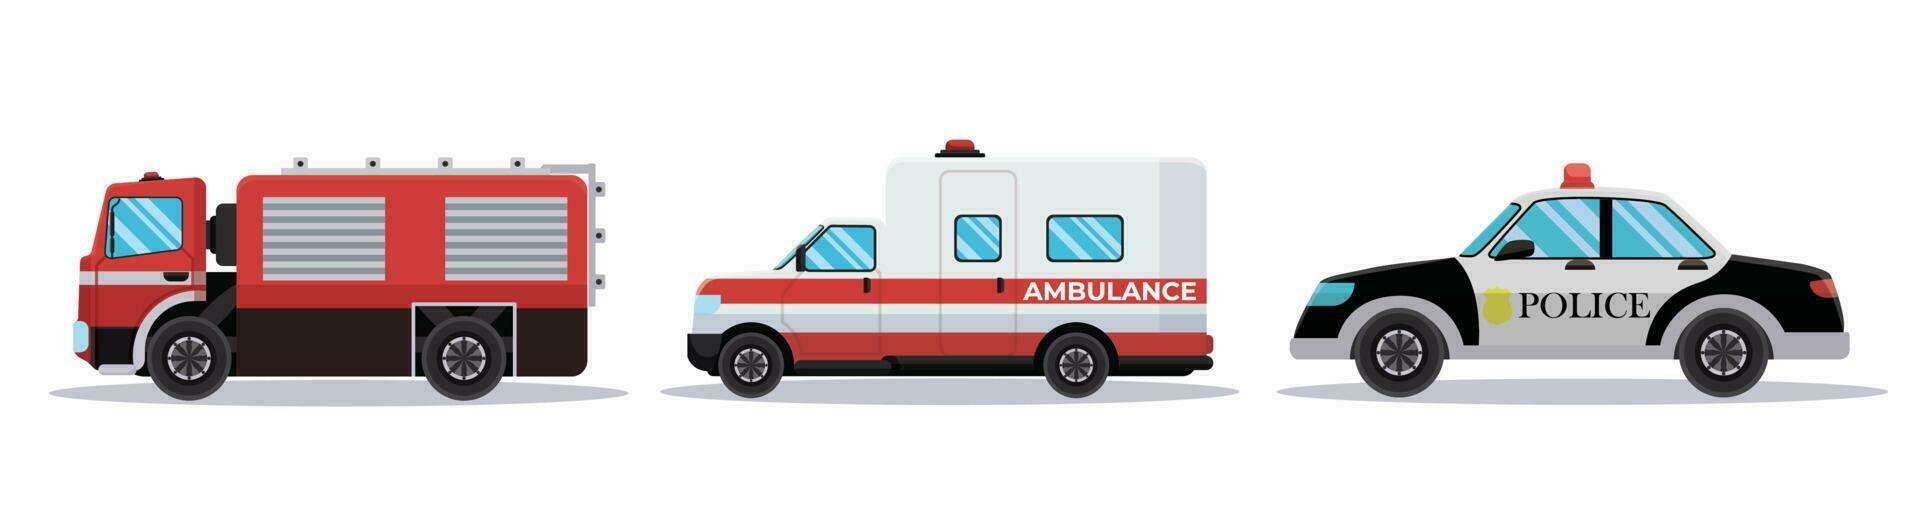 conjunto de coche vehículos transporte ambulancia, fuego motor, policía vector ilustración